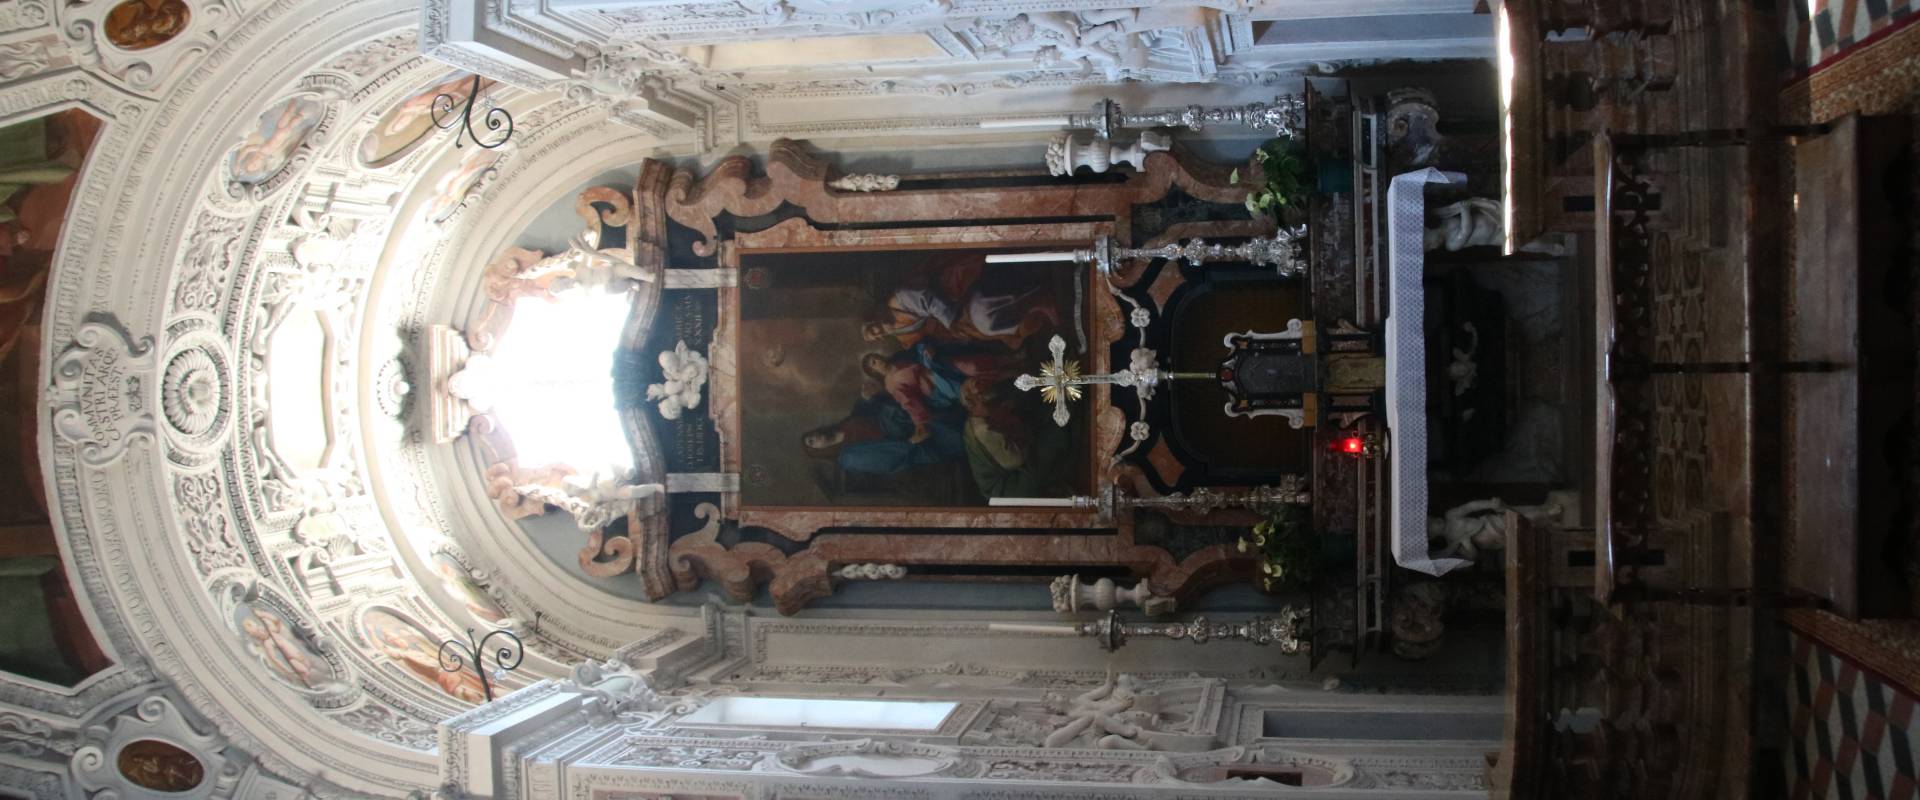 Collegiata di Santa Maria Assunta (Castell'Arquato), Cappella di San Giuseppe 01 foto di Mongolo1984